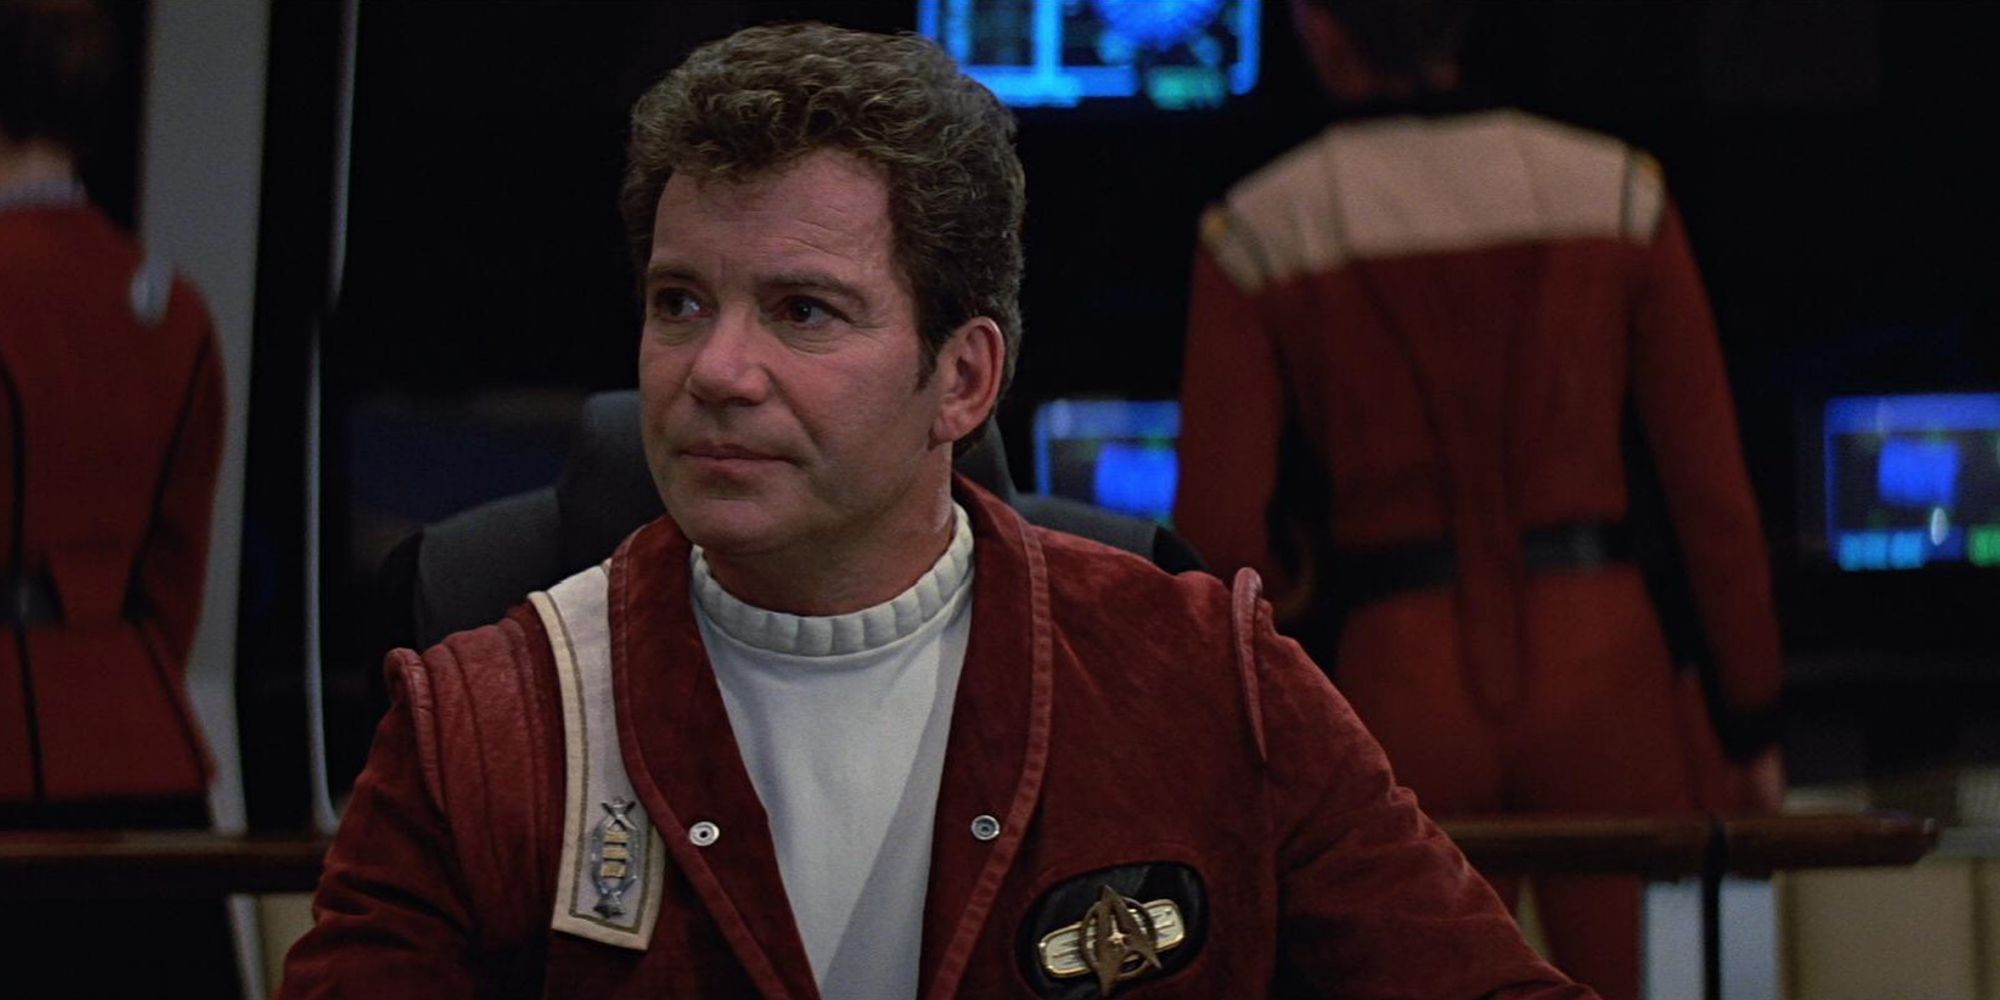 William Shatner as Captain Kirk in Star Trek 5 The Final Frontier